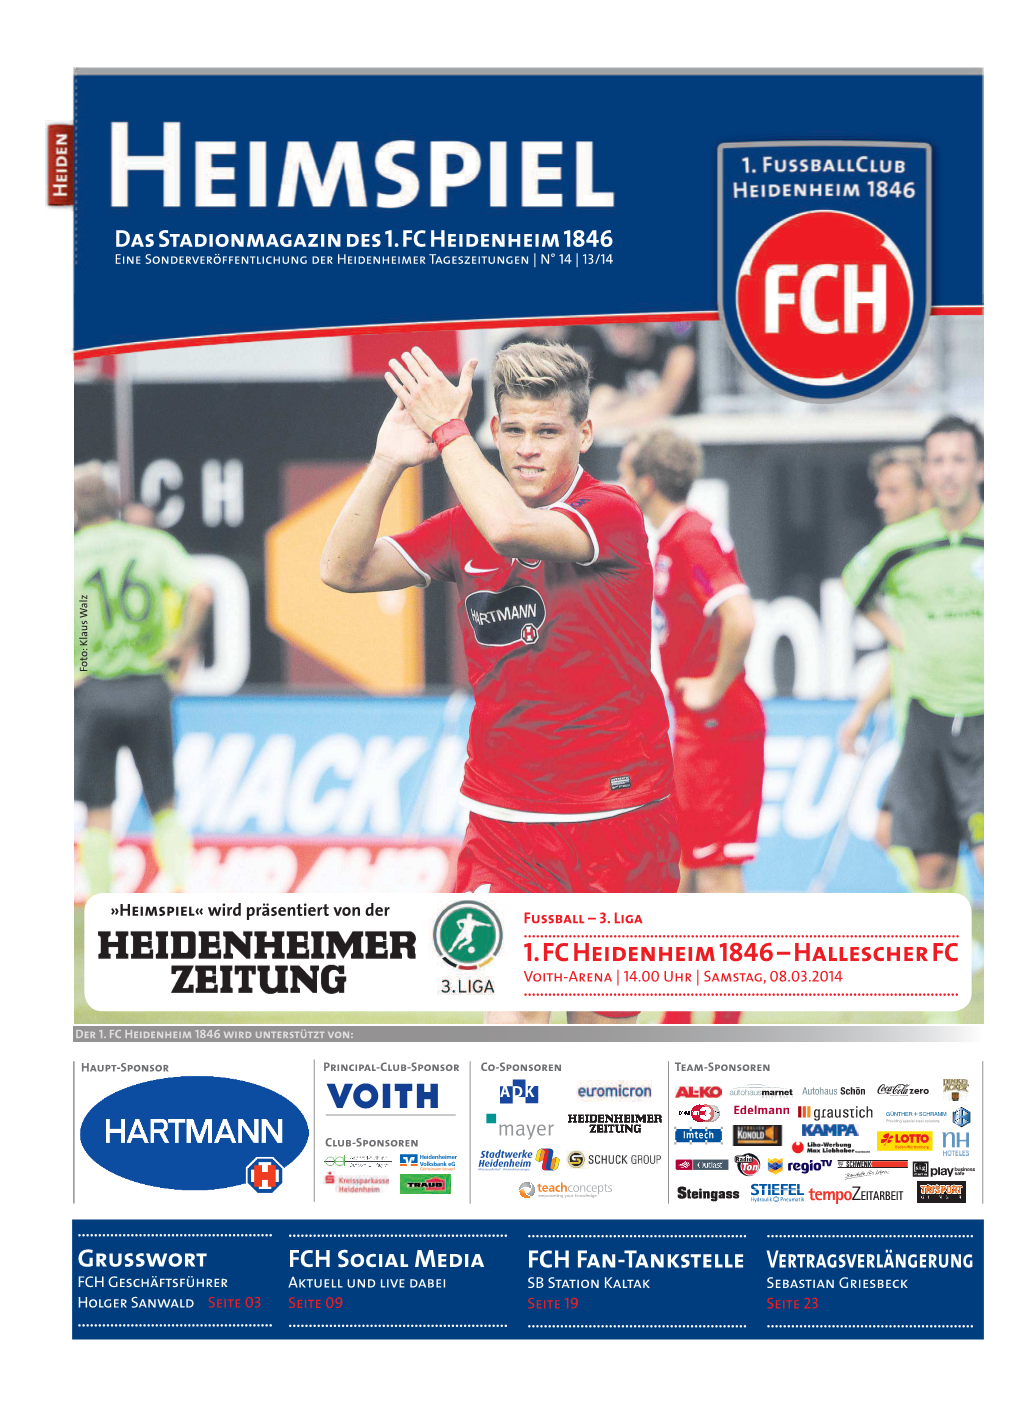 1. FC Heidenheim 1846 – Hallescher FC Voith-Arena | 14.00 Uhr | Samstag, 08.03.2014